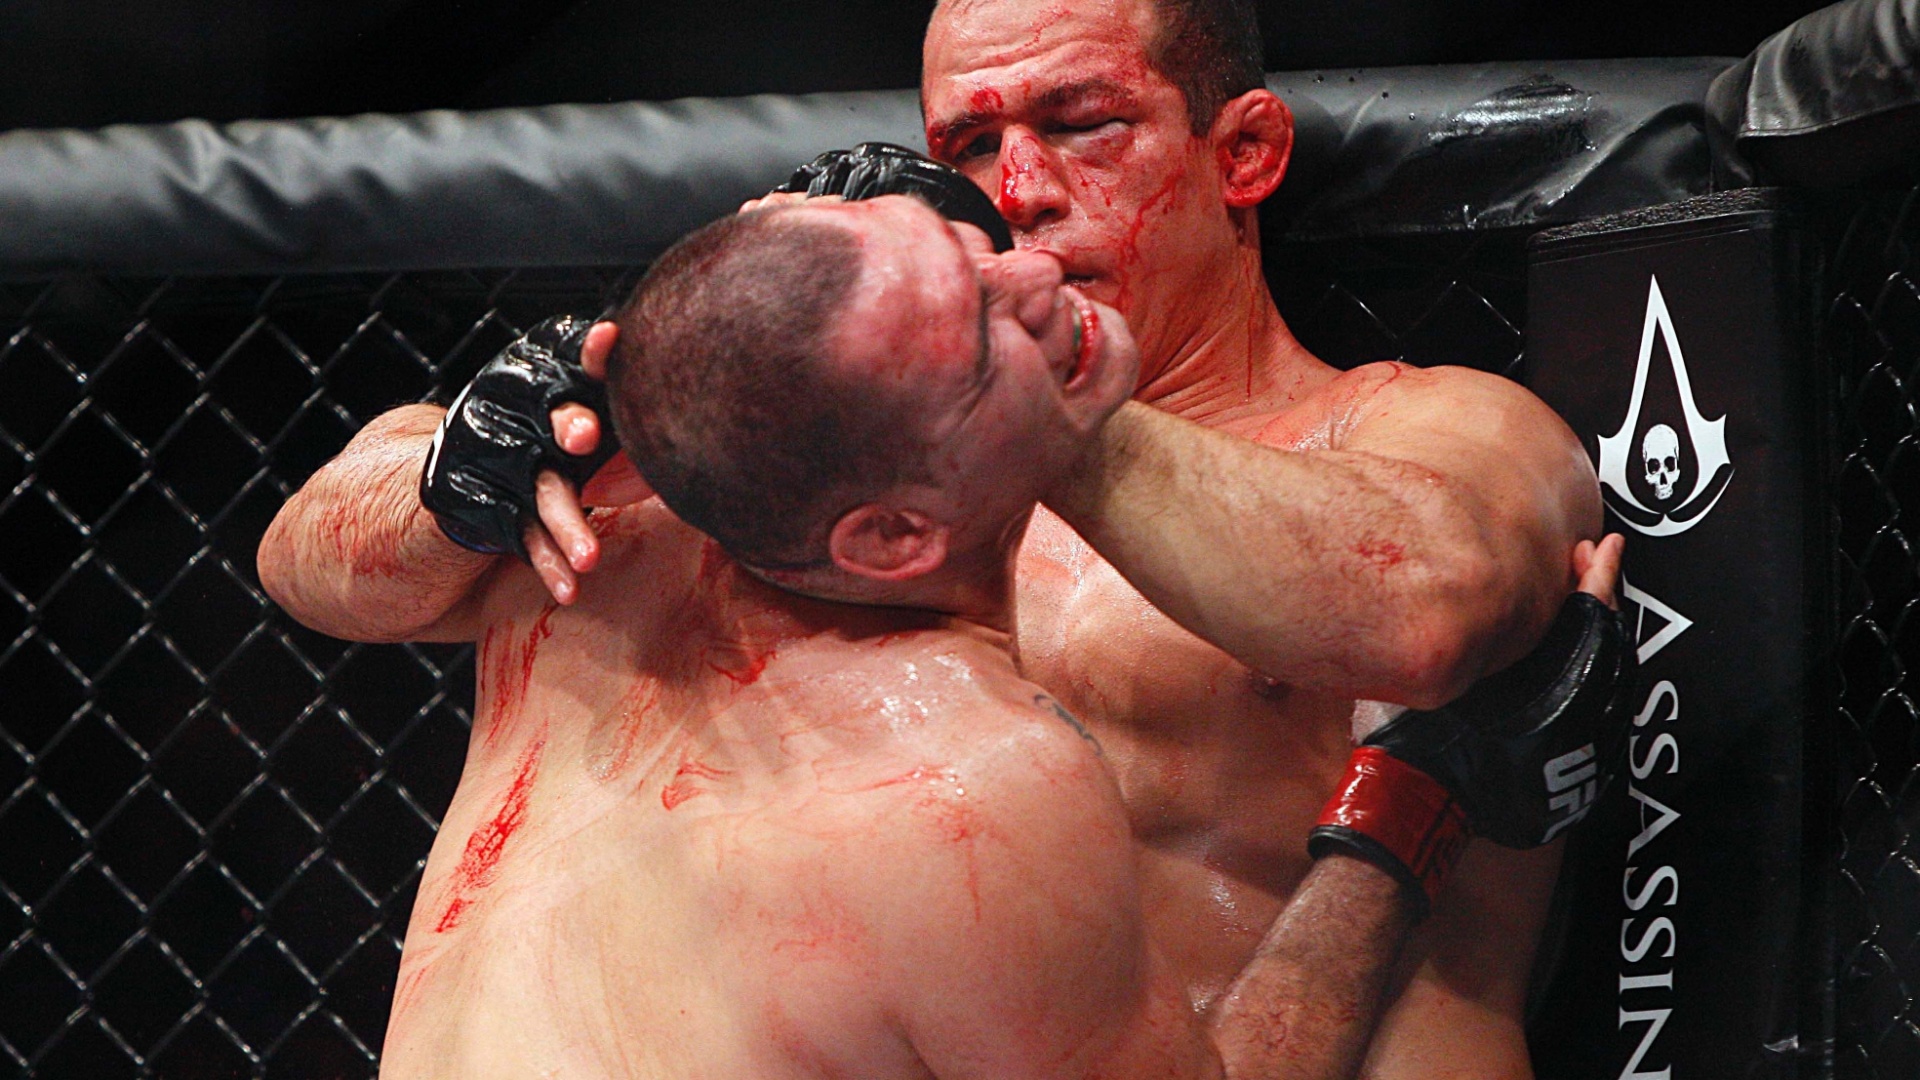 Com muitos ferimentos no rosto, Cigano tenta afastar e golpear Cain Velasquez